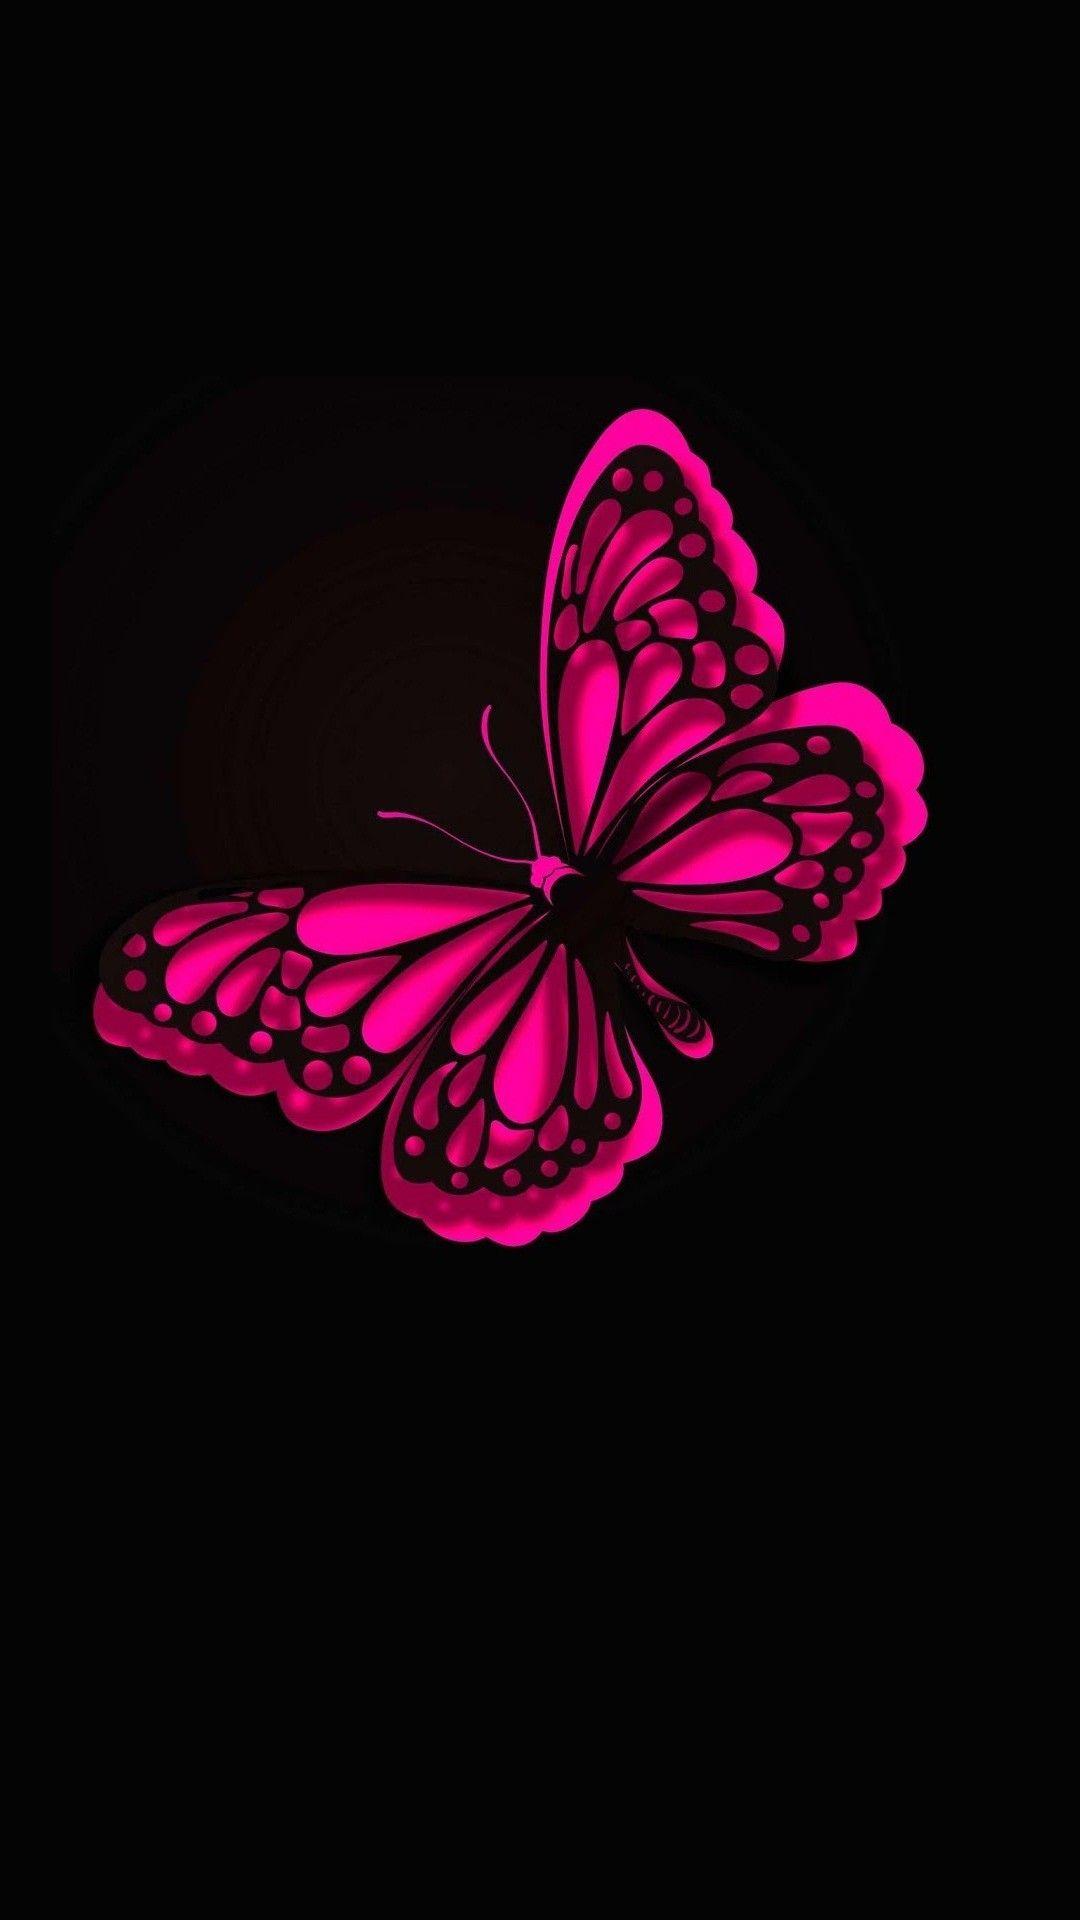 iPhone Wallpaper HD Pink Butterfly. Best HD Wallpaper. Pink